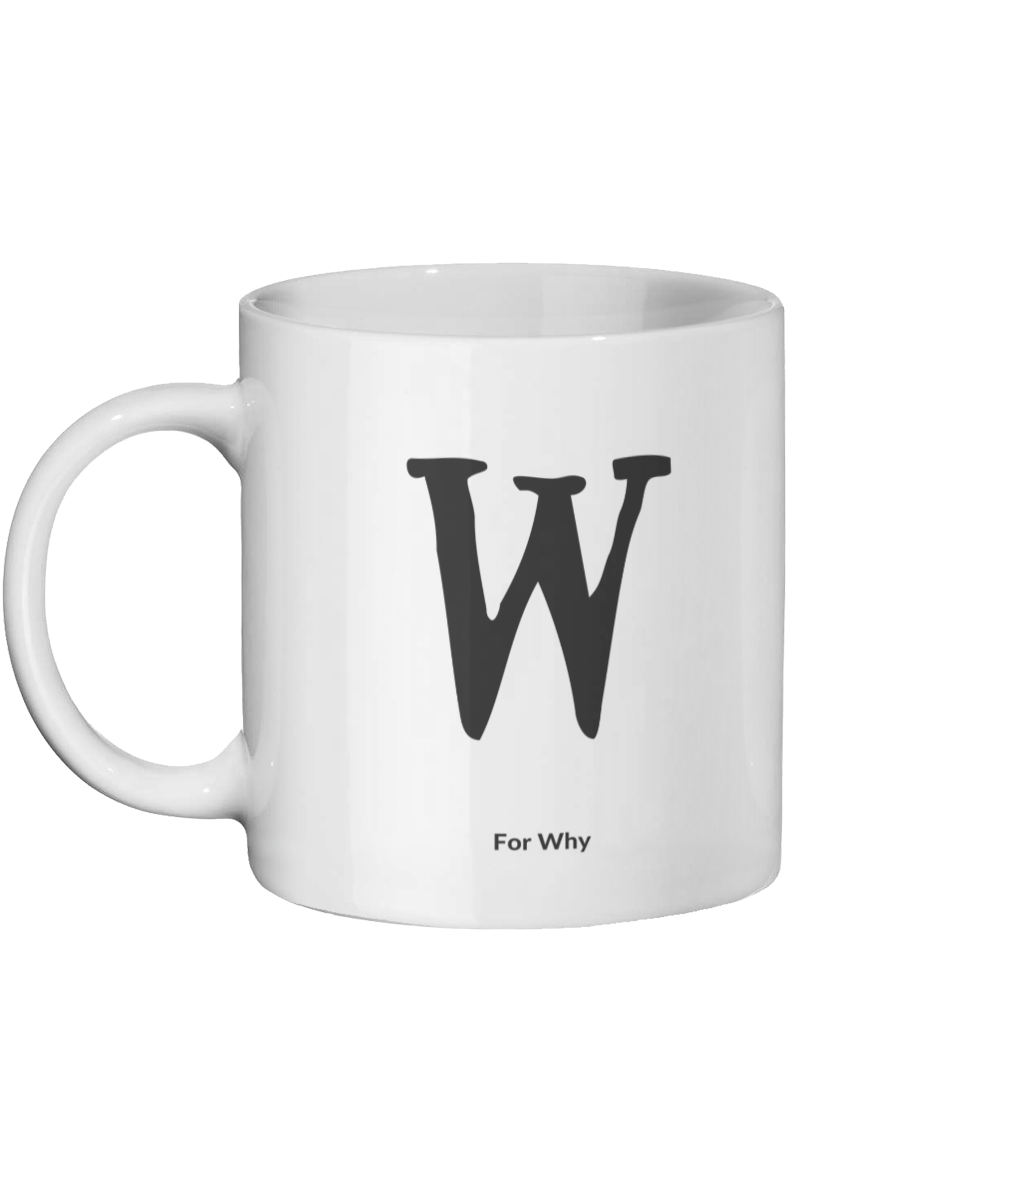 W for Why Mug Left-side